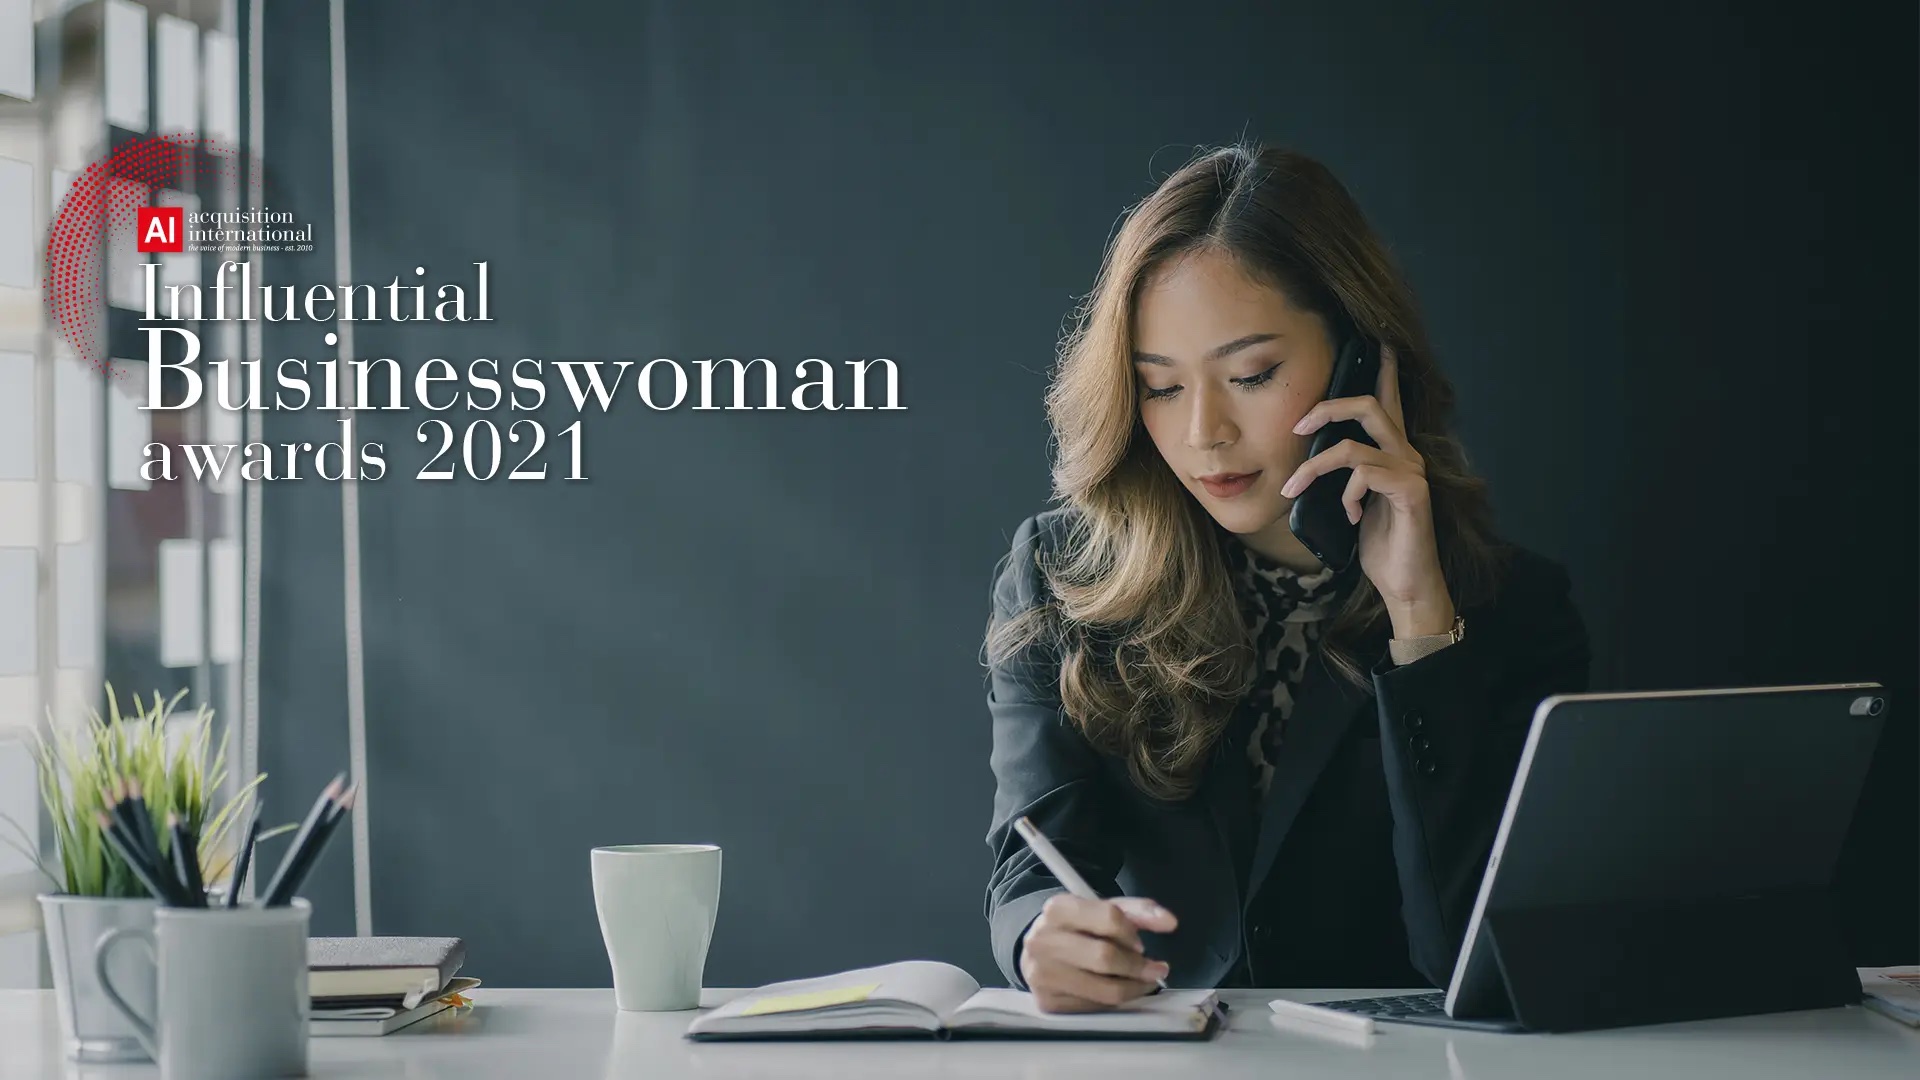 AI-Influential-Businesswoman-Awards-2021-PR-Cover.jpg copy.jpg